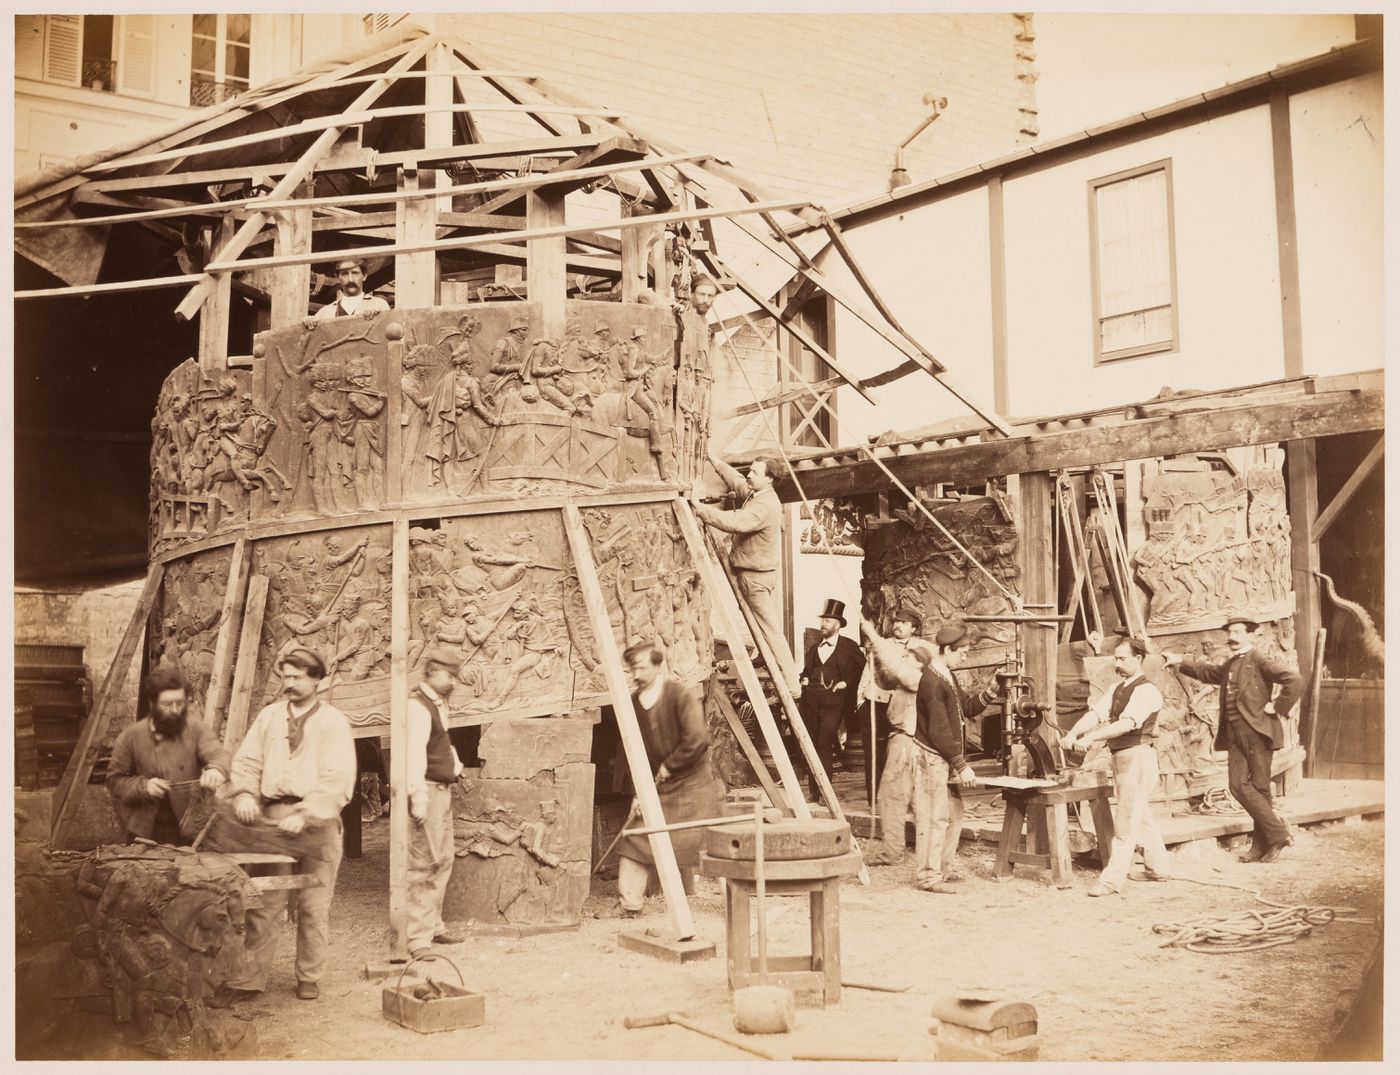 The Vendôme Column under reconstruction being assembled by workmen, Paris, France